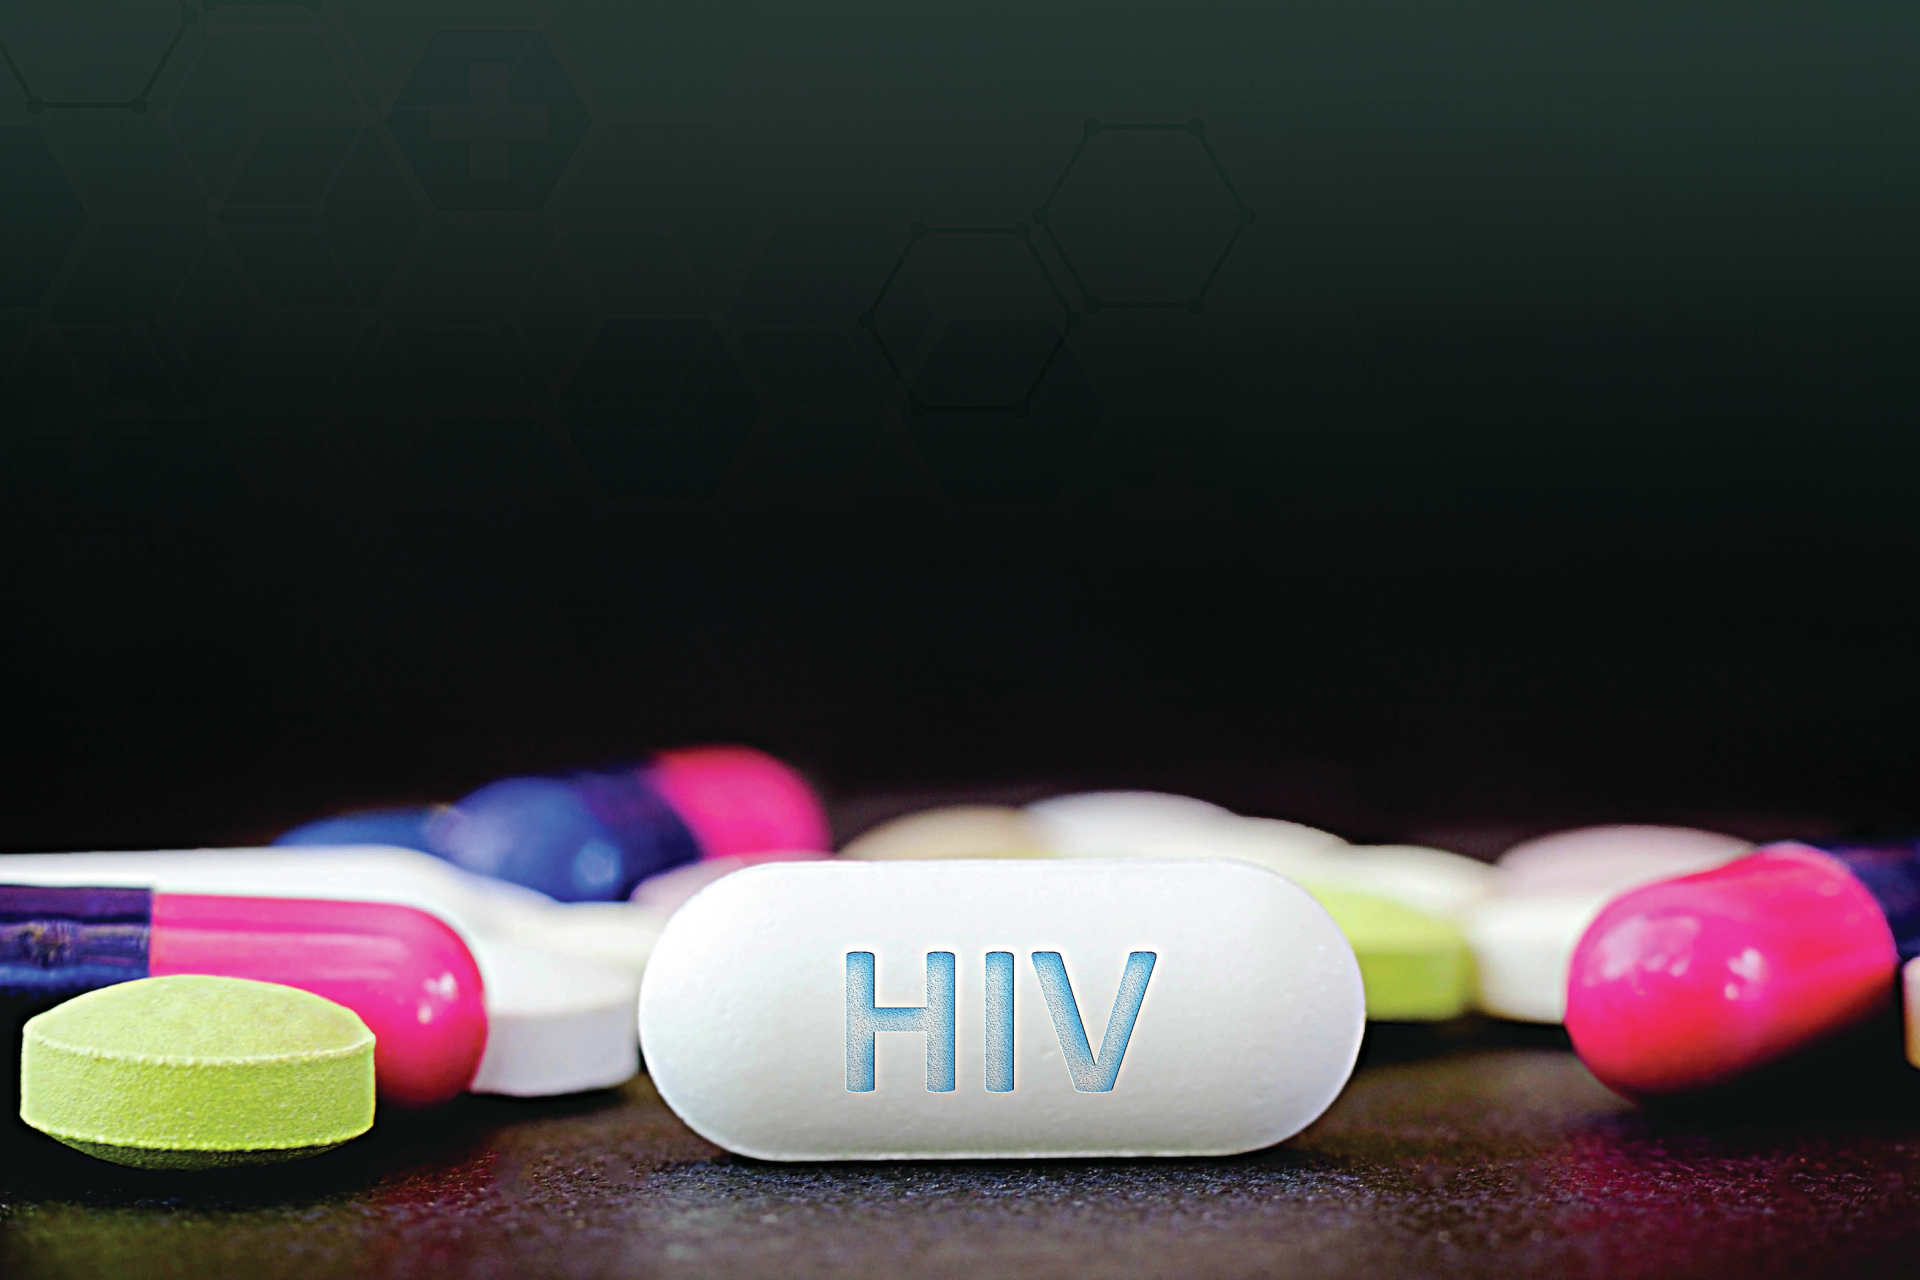 Cura do VIH. “As esperanças que estas notícias trazem preocupam-me”